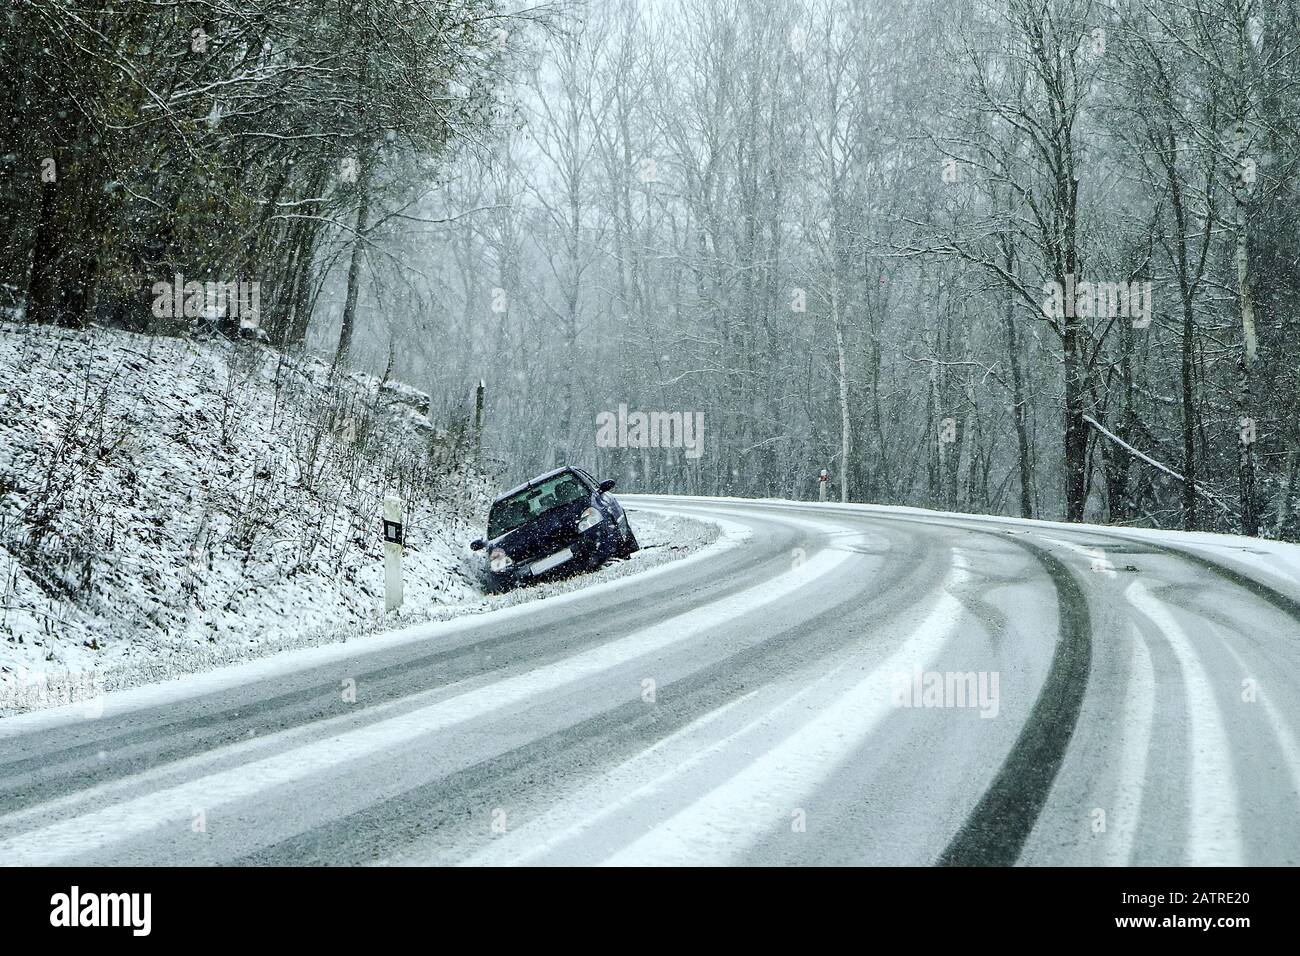 Auto abbandonata nel fosso dopo l'incidente stradale. Simboleggia le condizioni pericolose in inverno con ghiaccio, neve e neve. Foto Stock